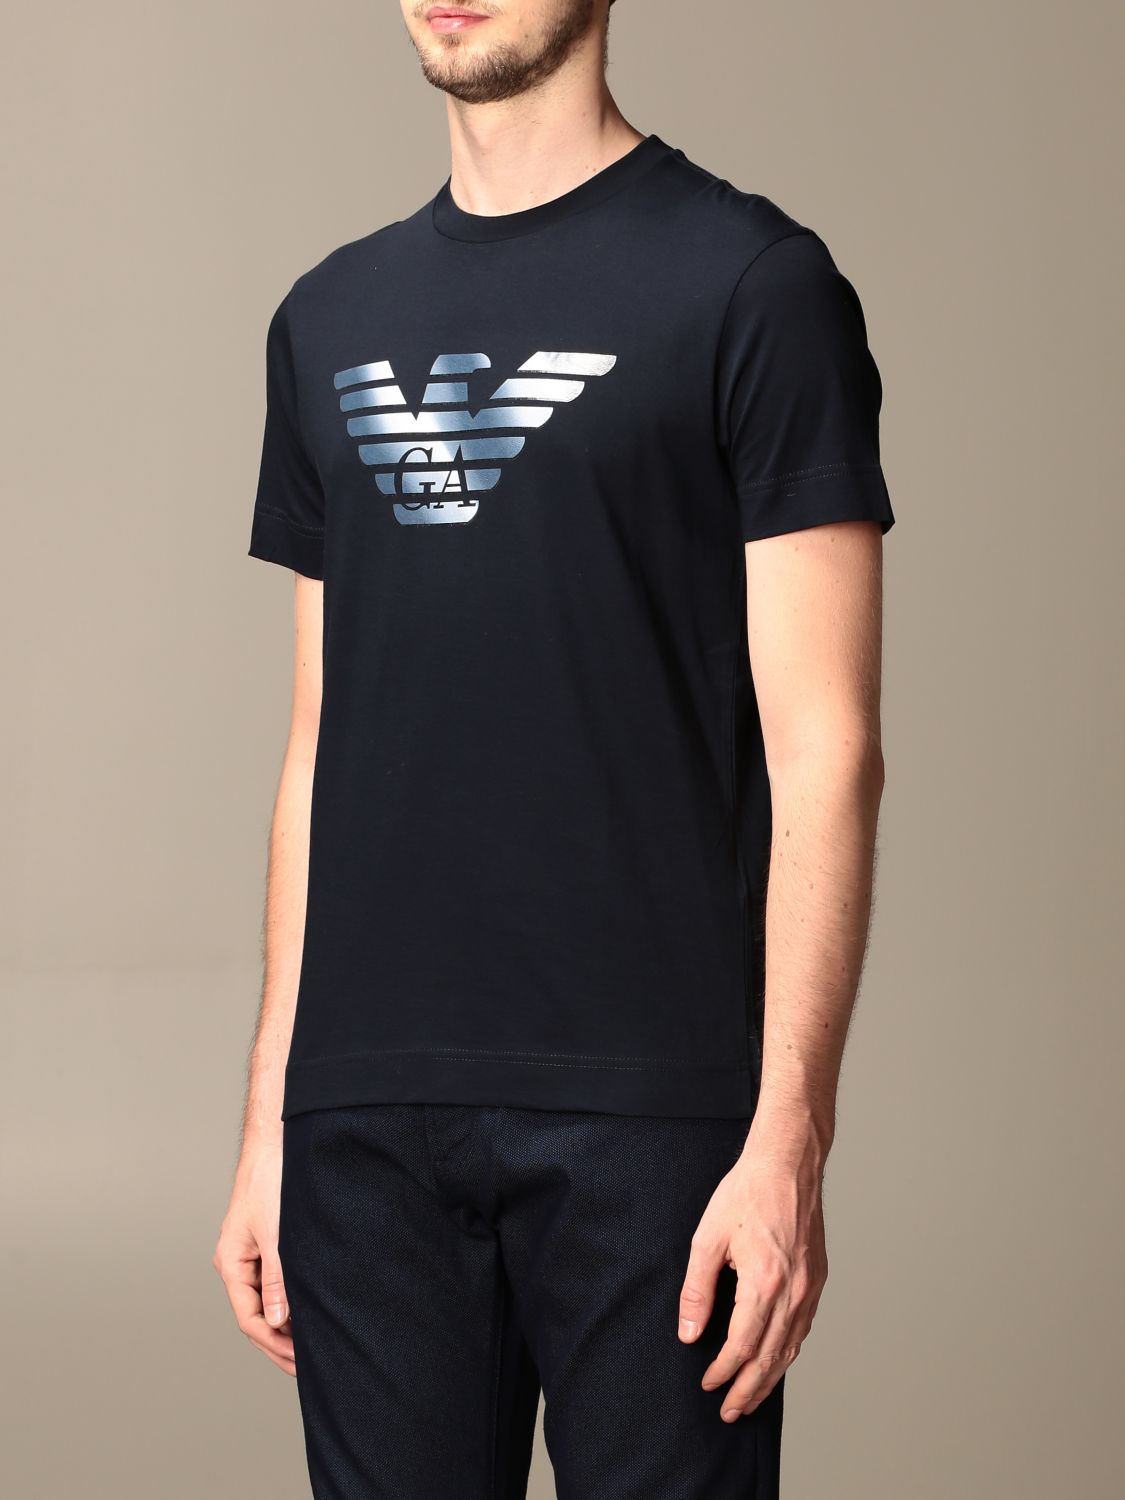 あなたにおすすめの商品 新品 EMPORIO ARMANI エンポリオアルマーニ Tシャツ XXLサイズ NERO BLACK swedish